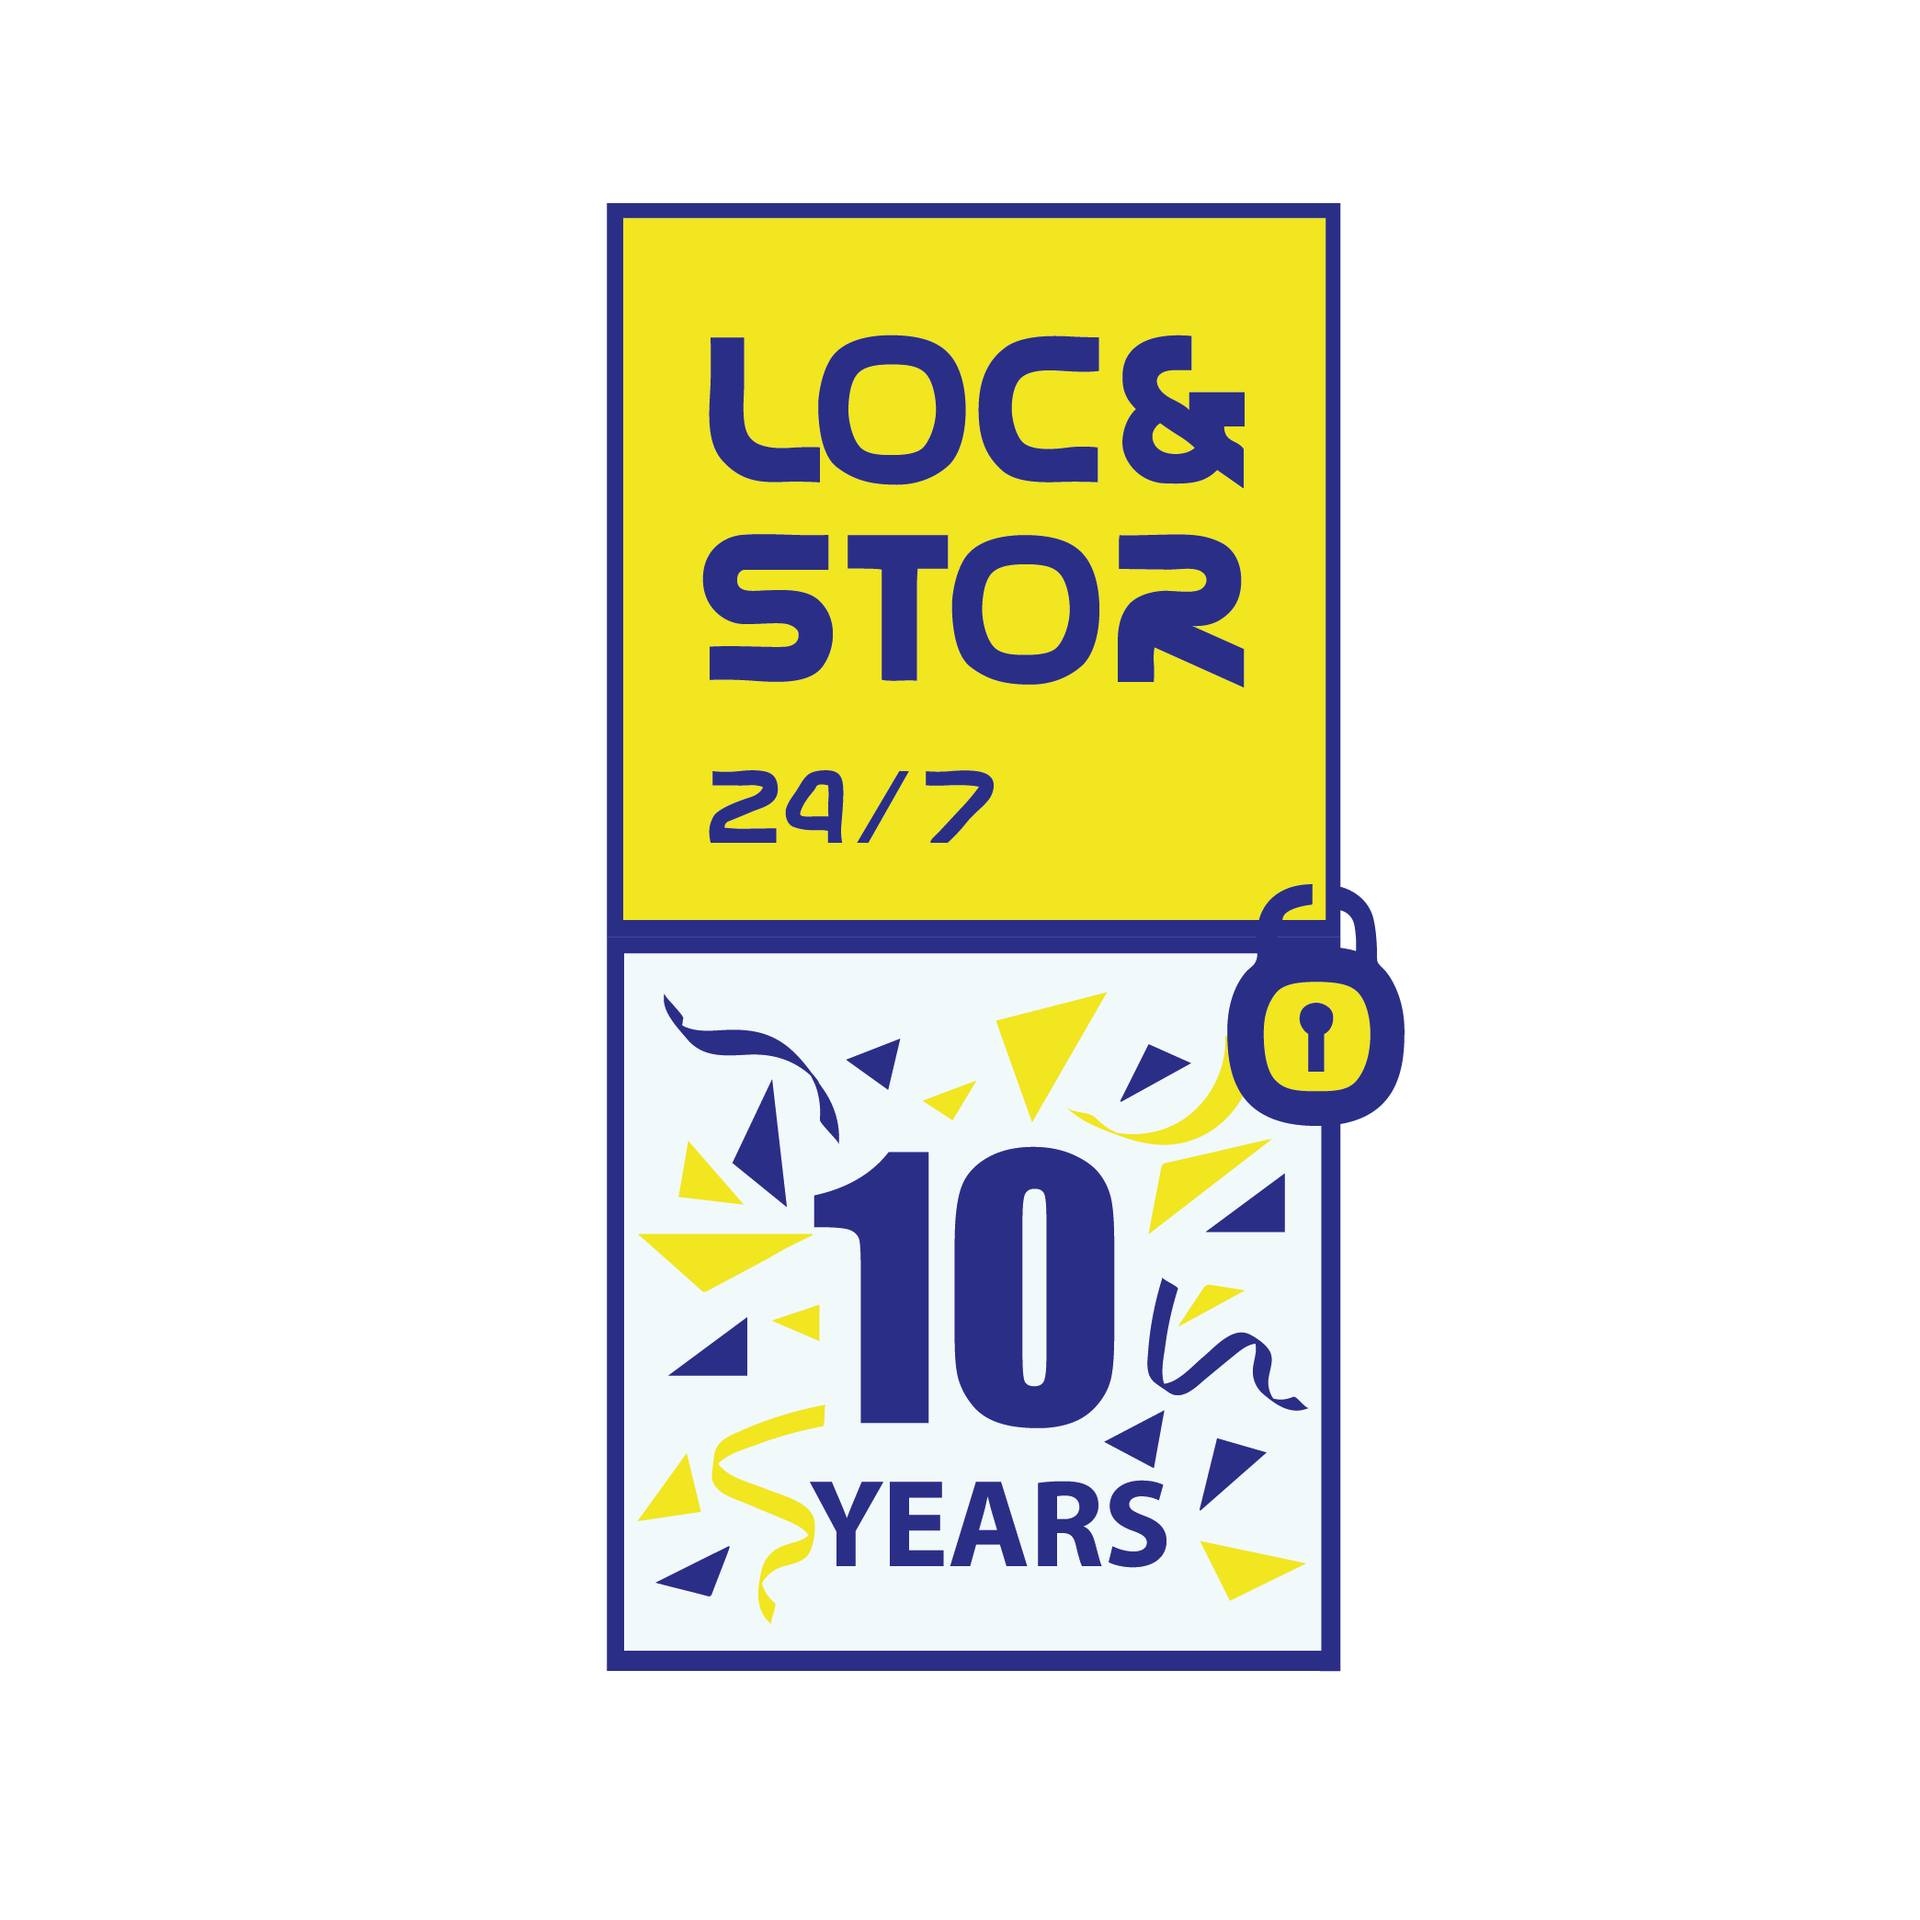 Loc&Stor 24/7, Inc